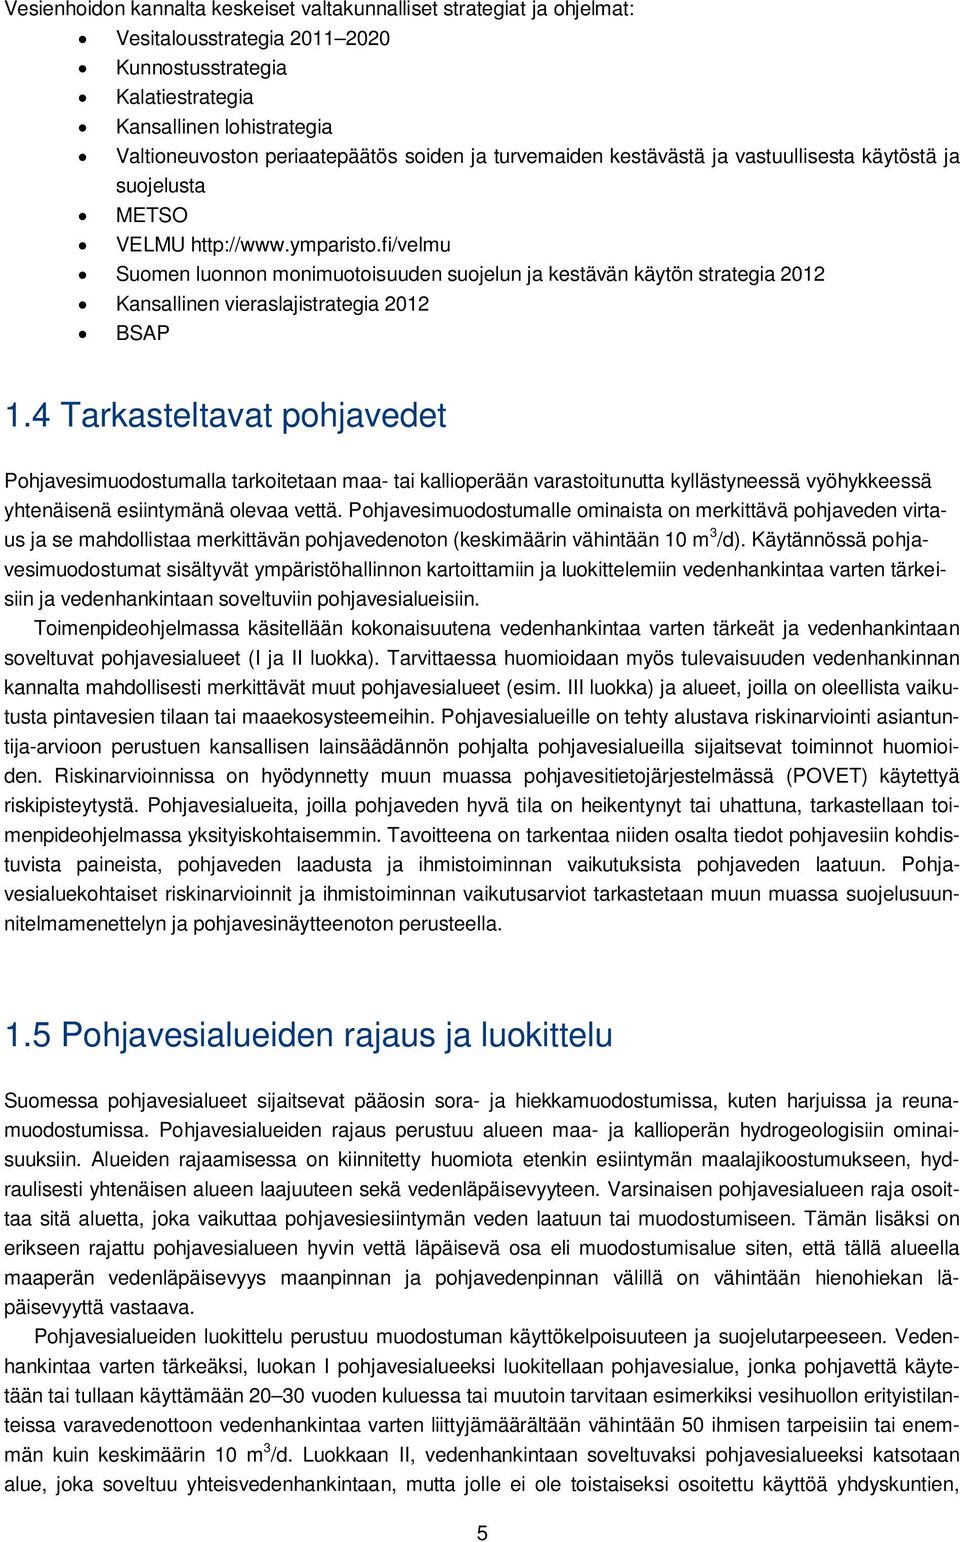 fi/velmu Suomen luonnon monimuotoisuuden suojelun ja kestävän käytön strategia 2012 Kansallinen vieraslajistrategia 2012 BSAP 1.